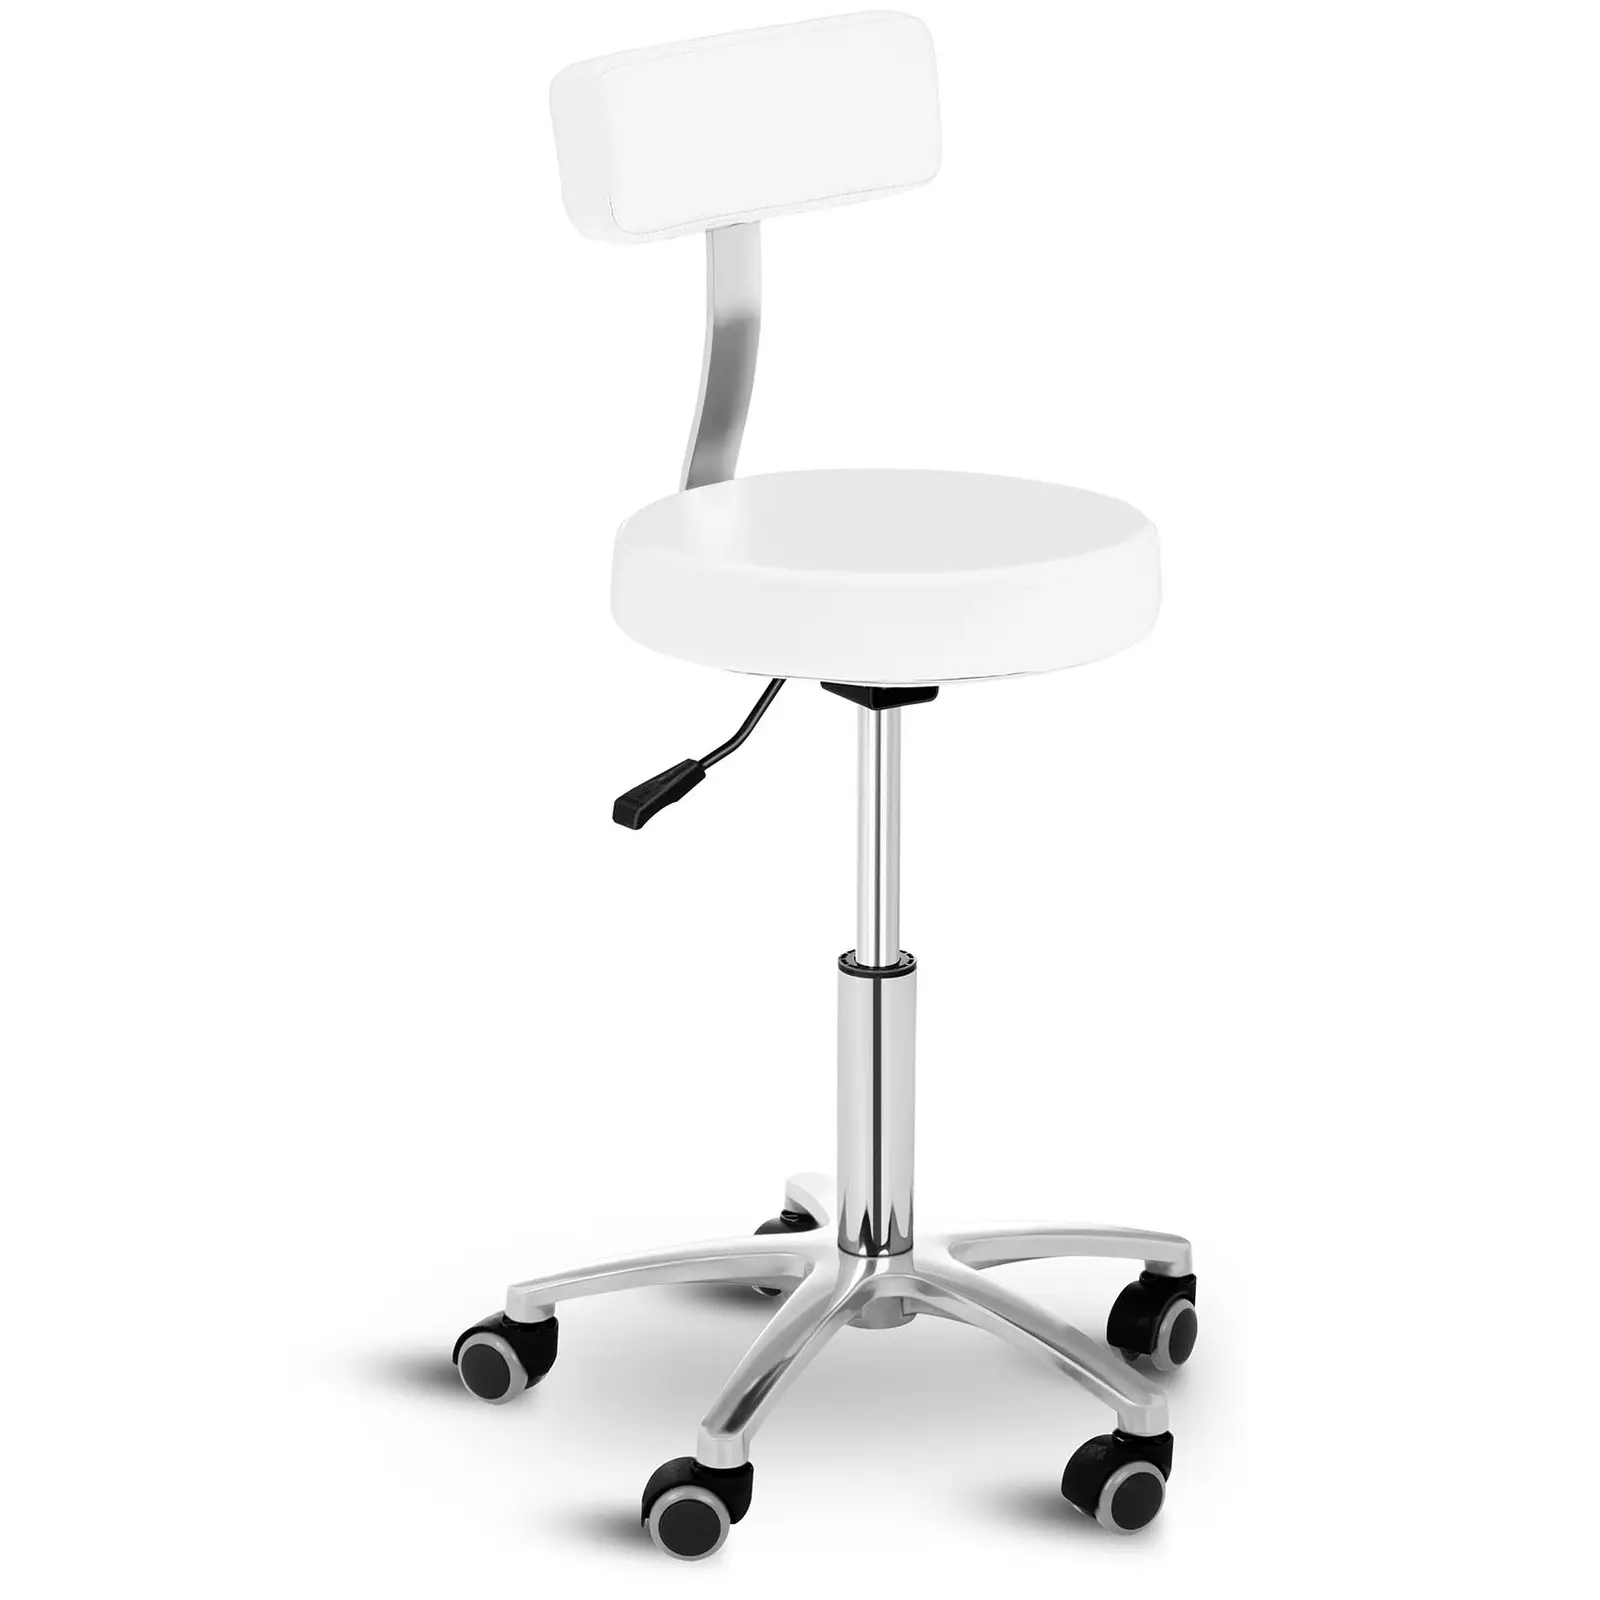 Arbetsstol frisör - 445 - 580 mm - 150 kg - Vit